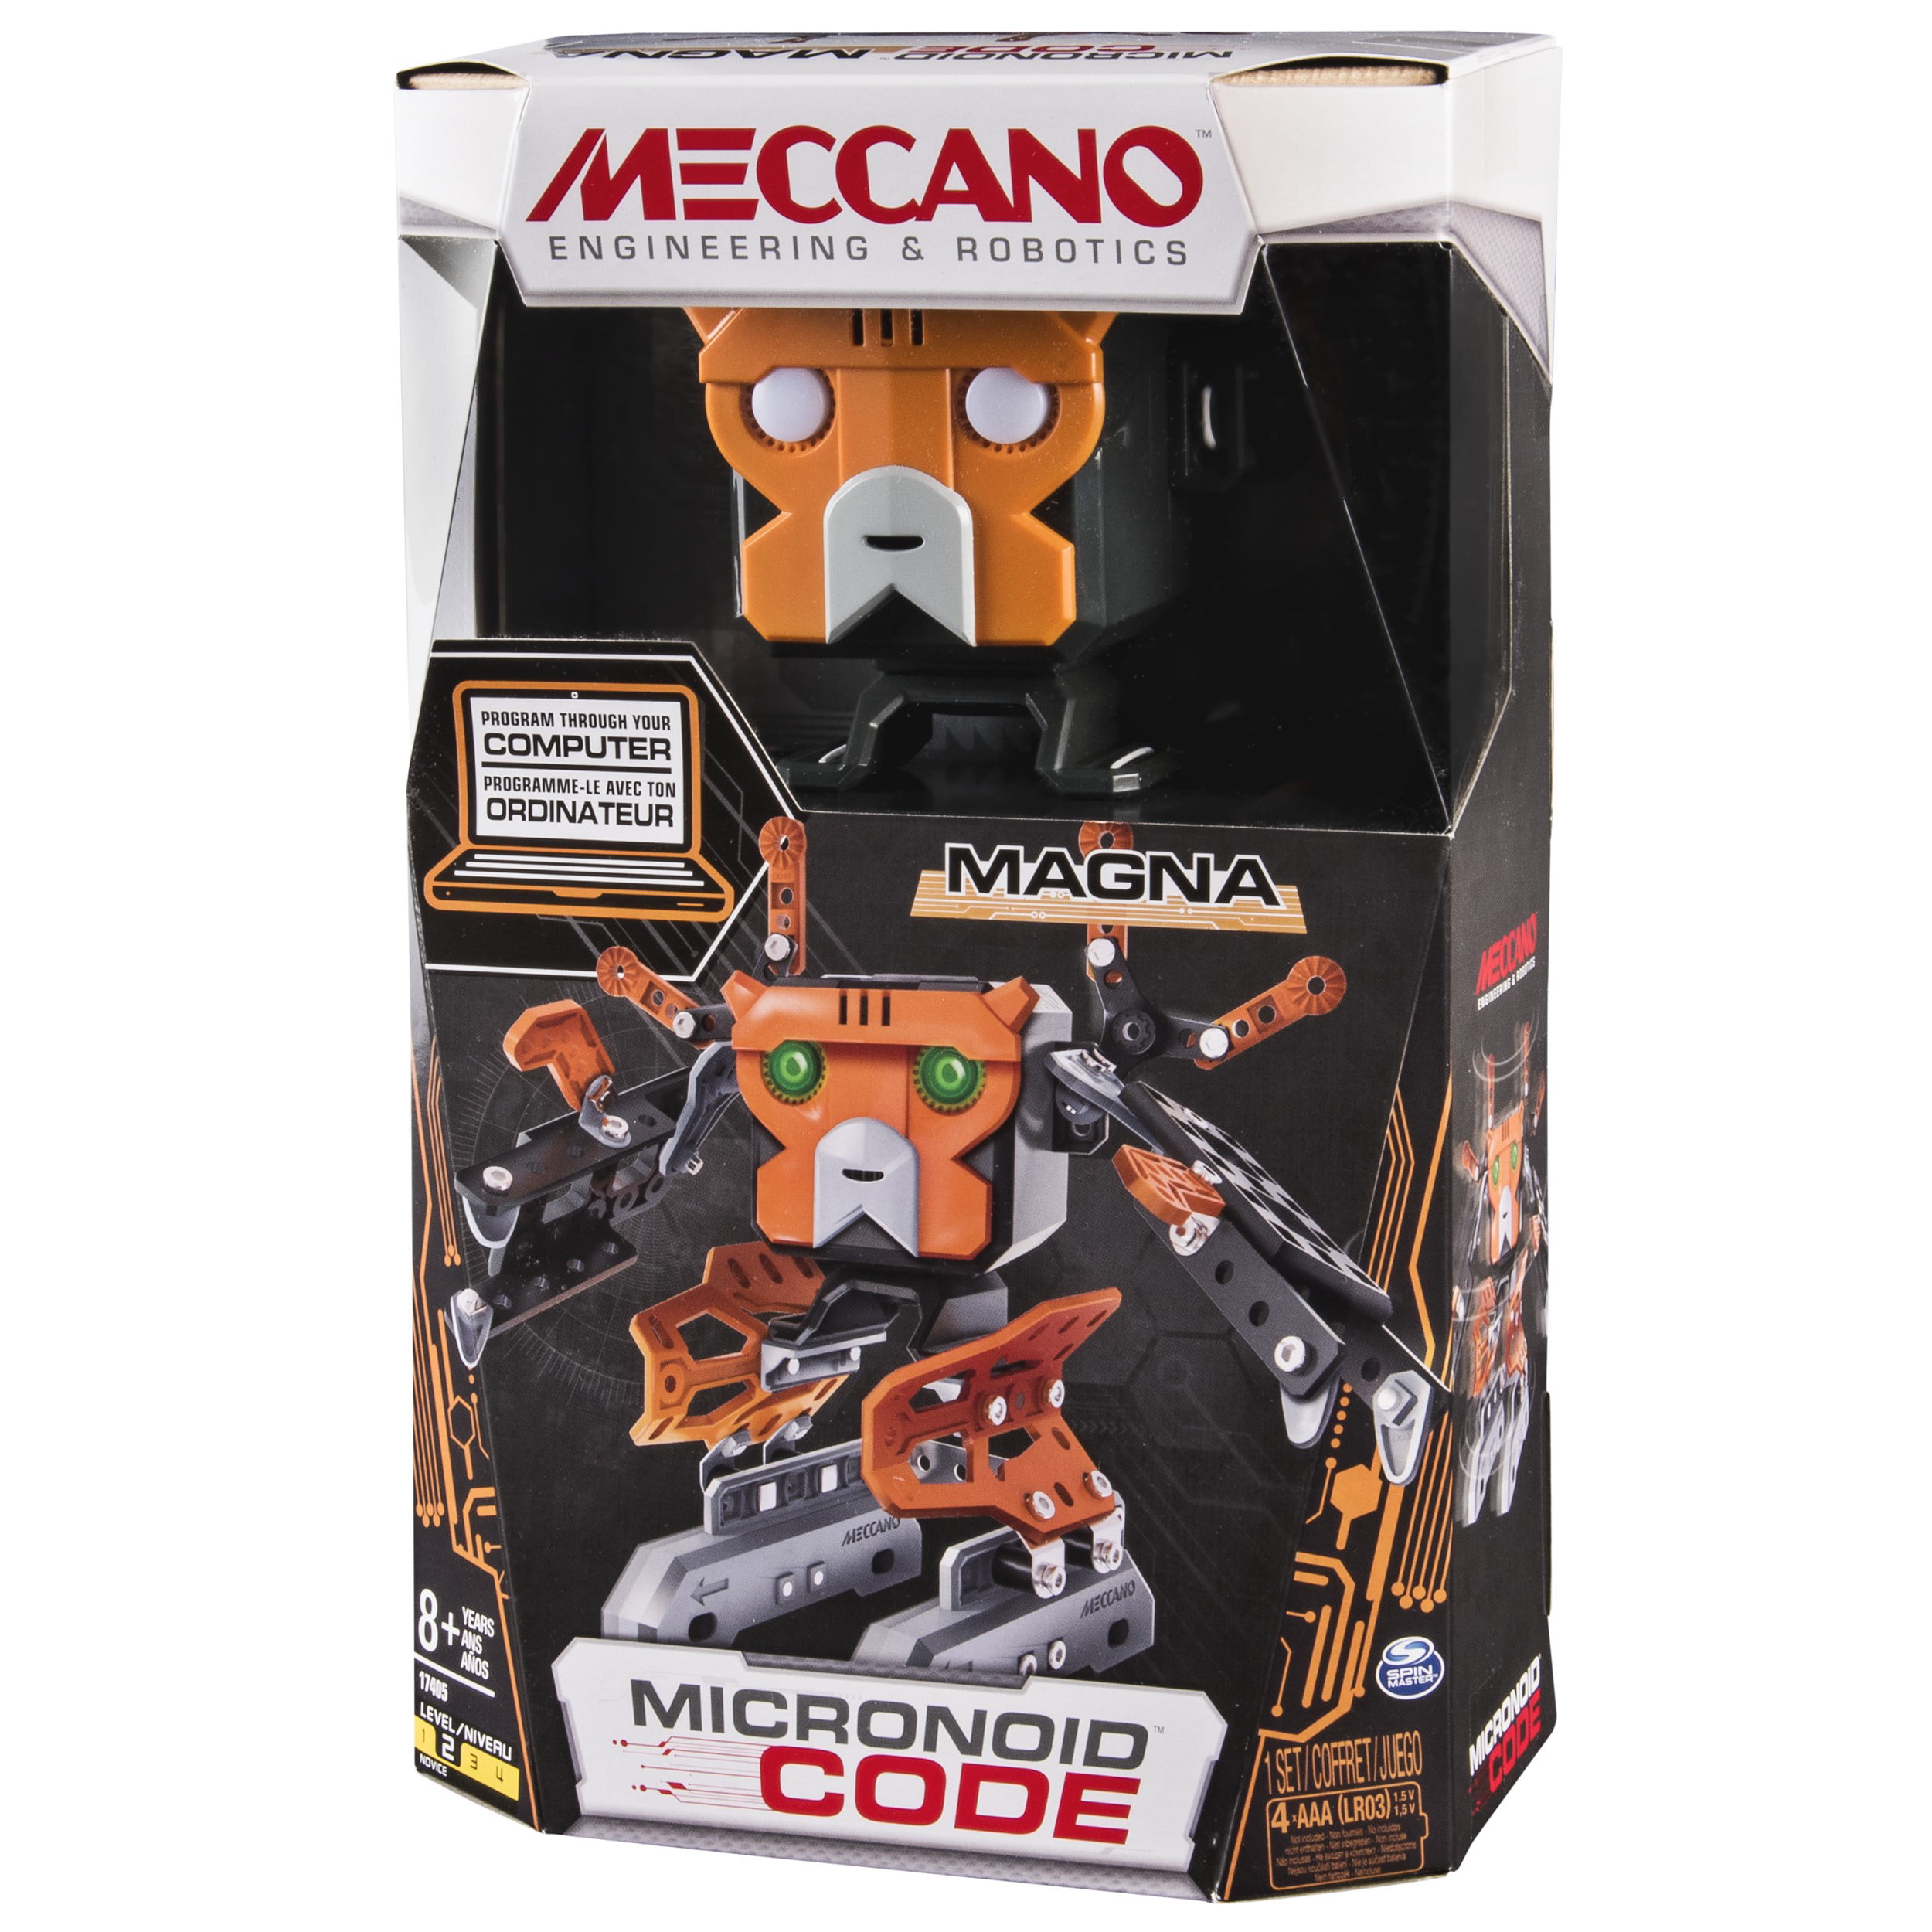 Meccano TEC Micronoid Code ACE MECCANO 1053295 Robot STEM 